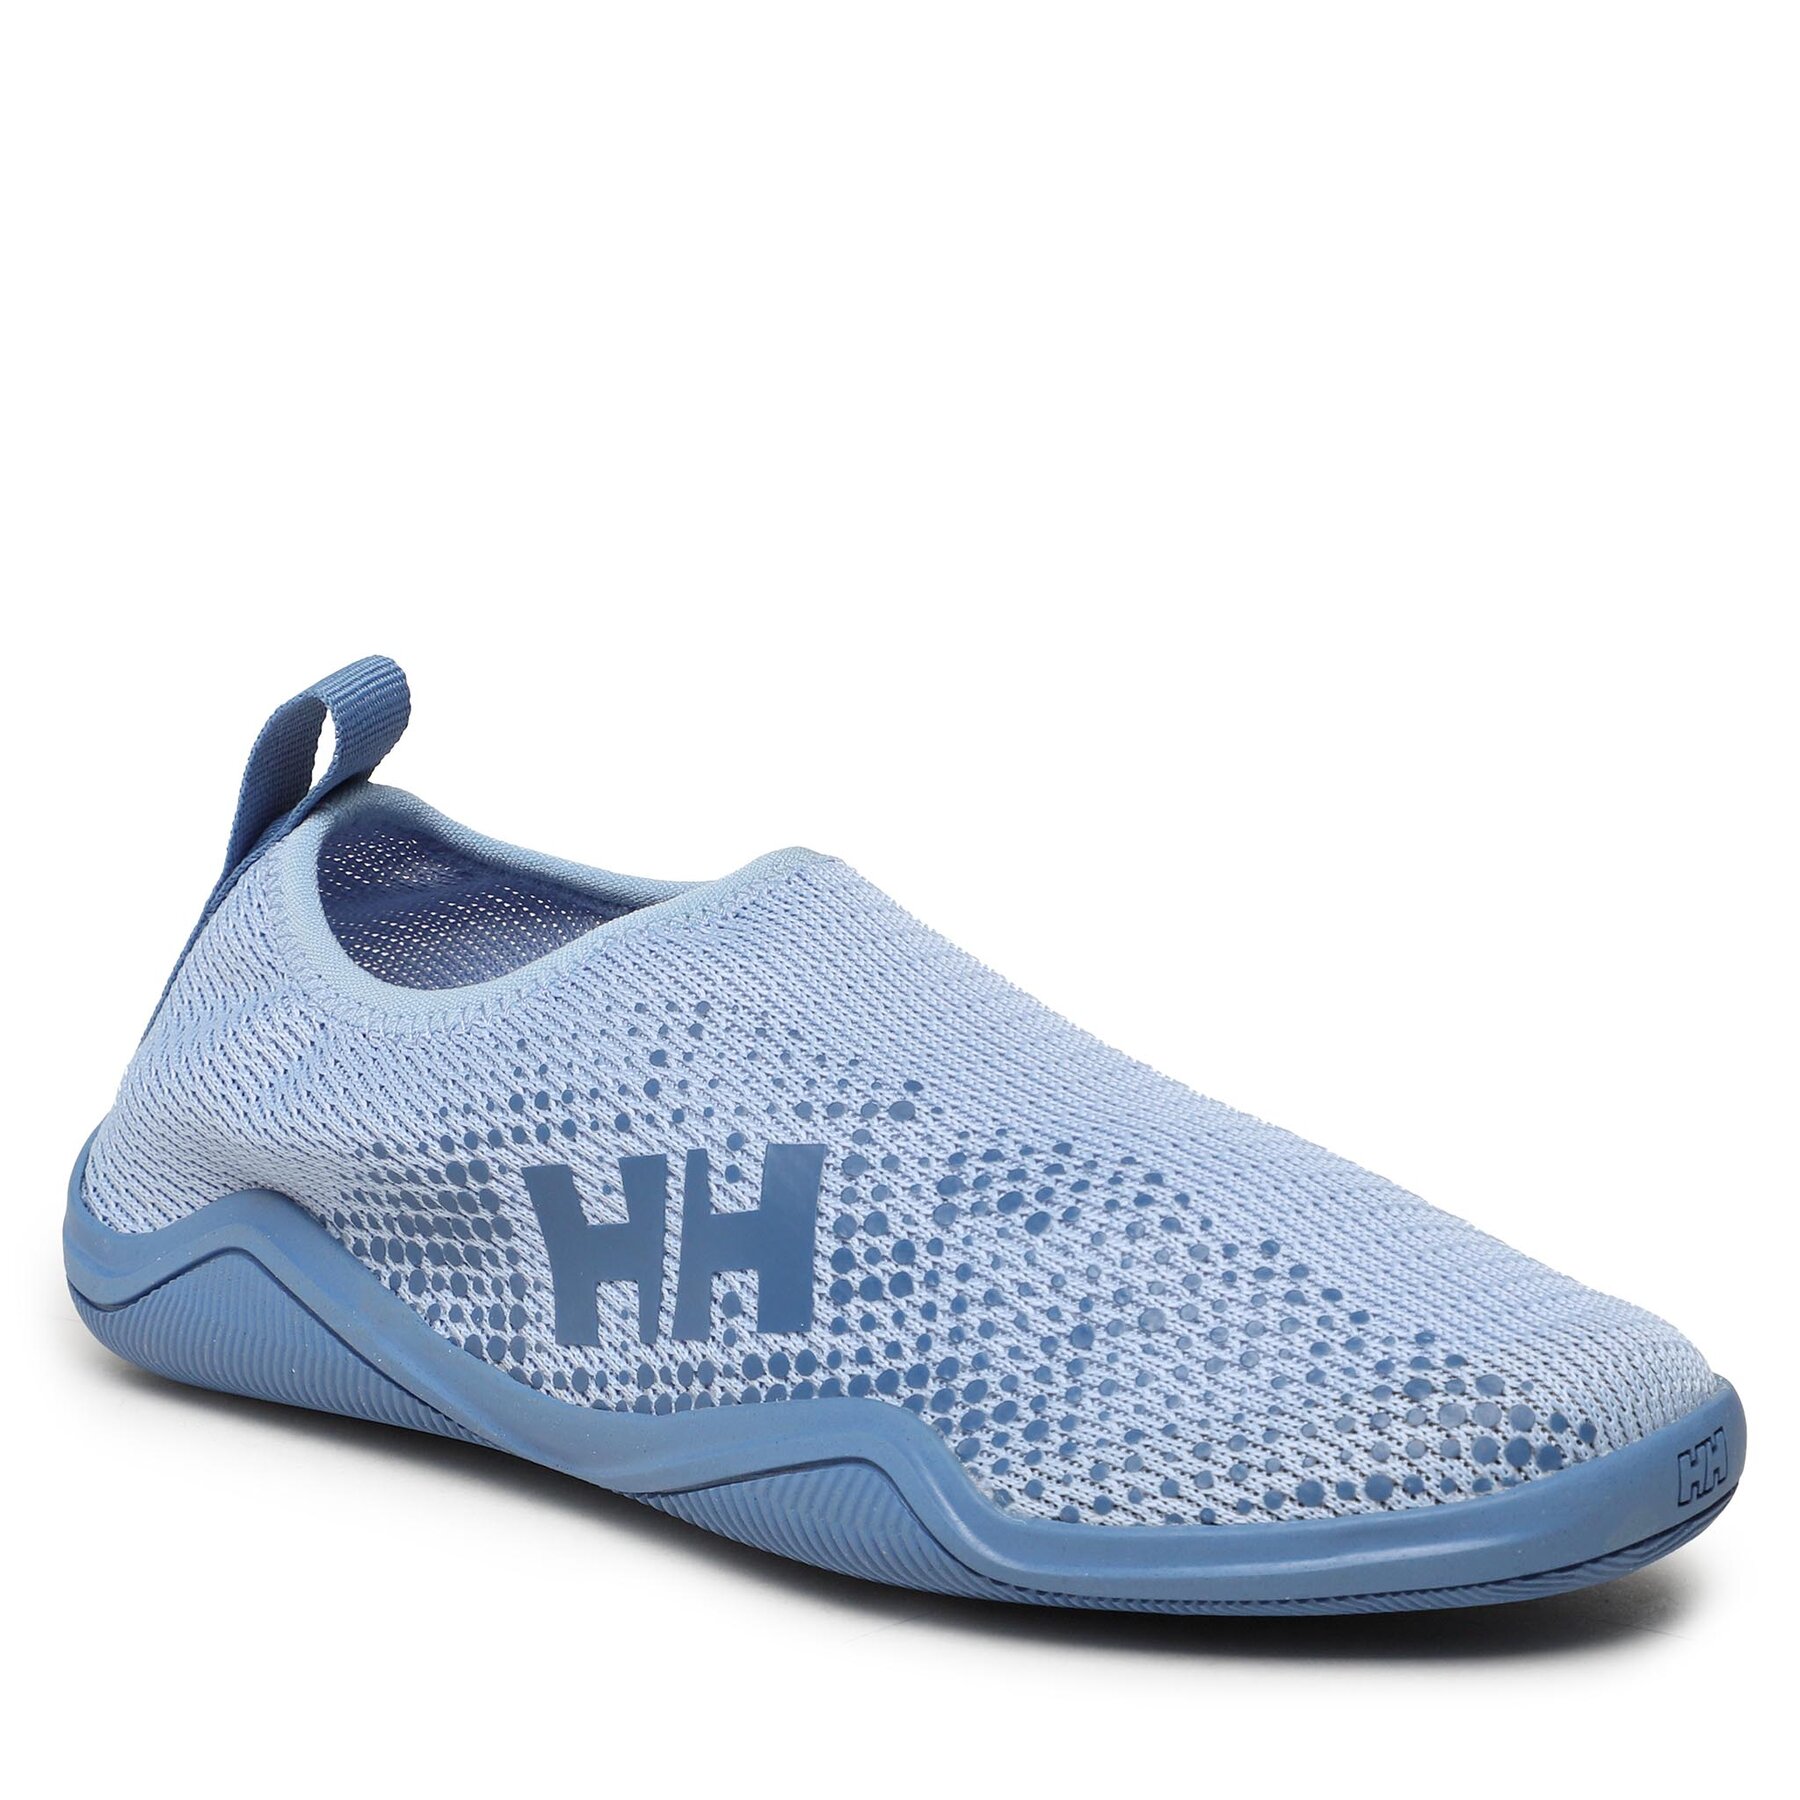 Čevlji Helly Hansen W Crest Watermoc 11556_627 Bright Blue/Azurite